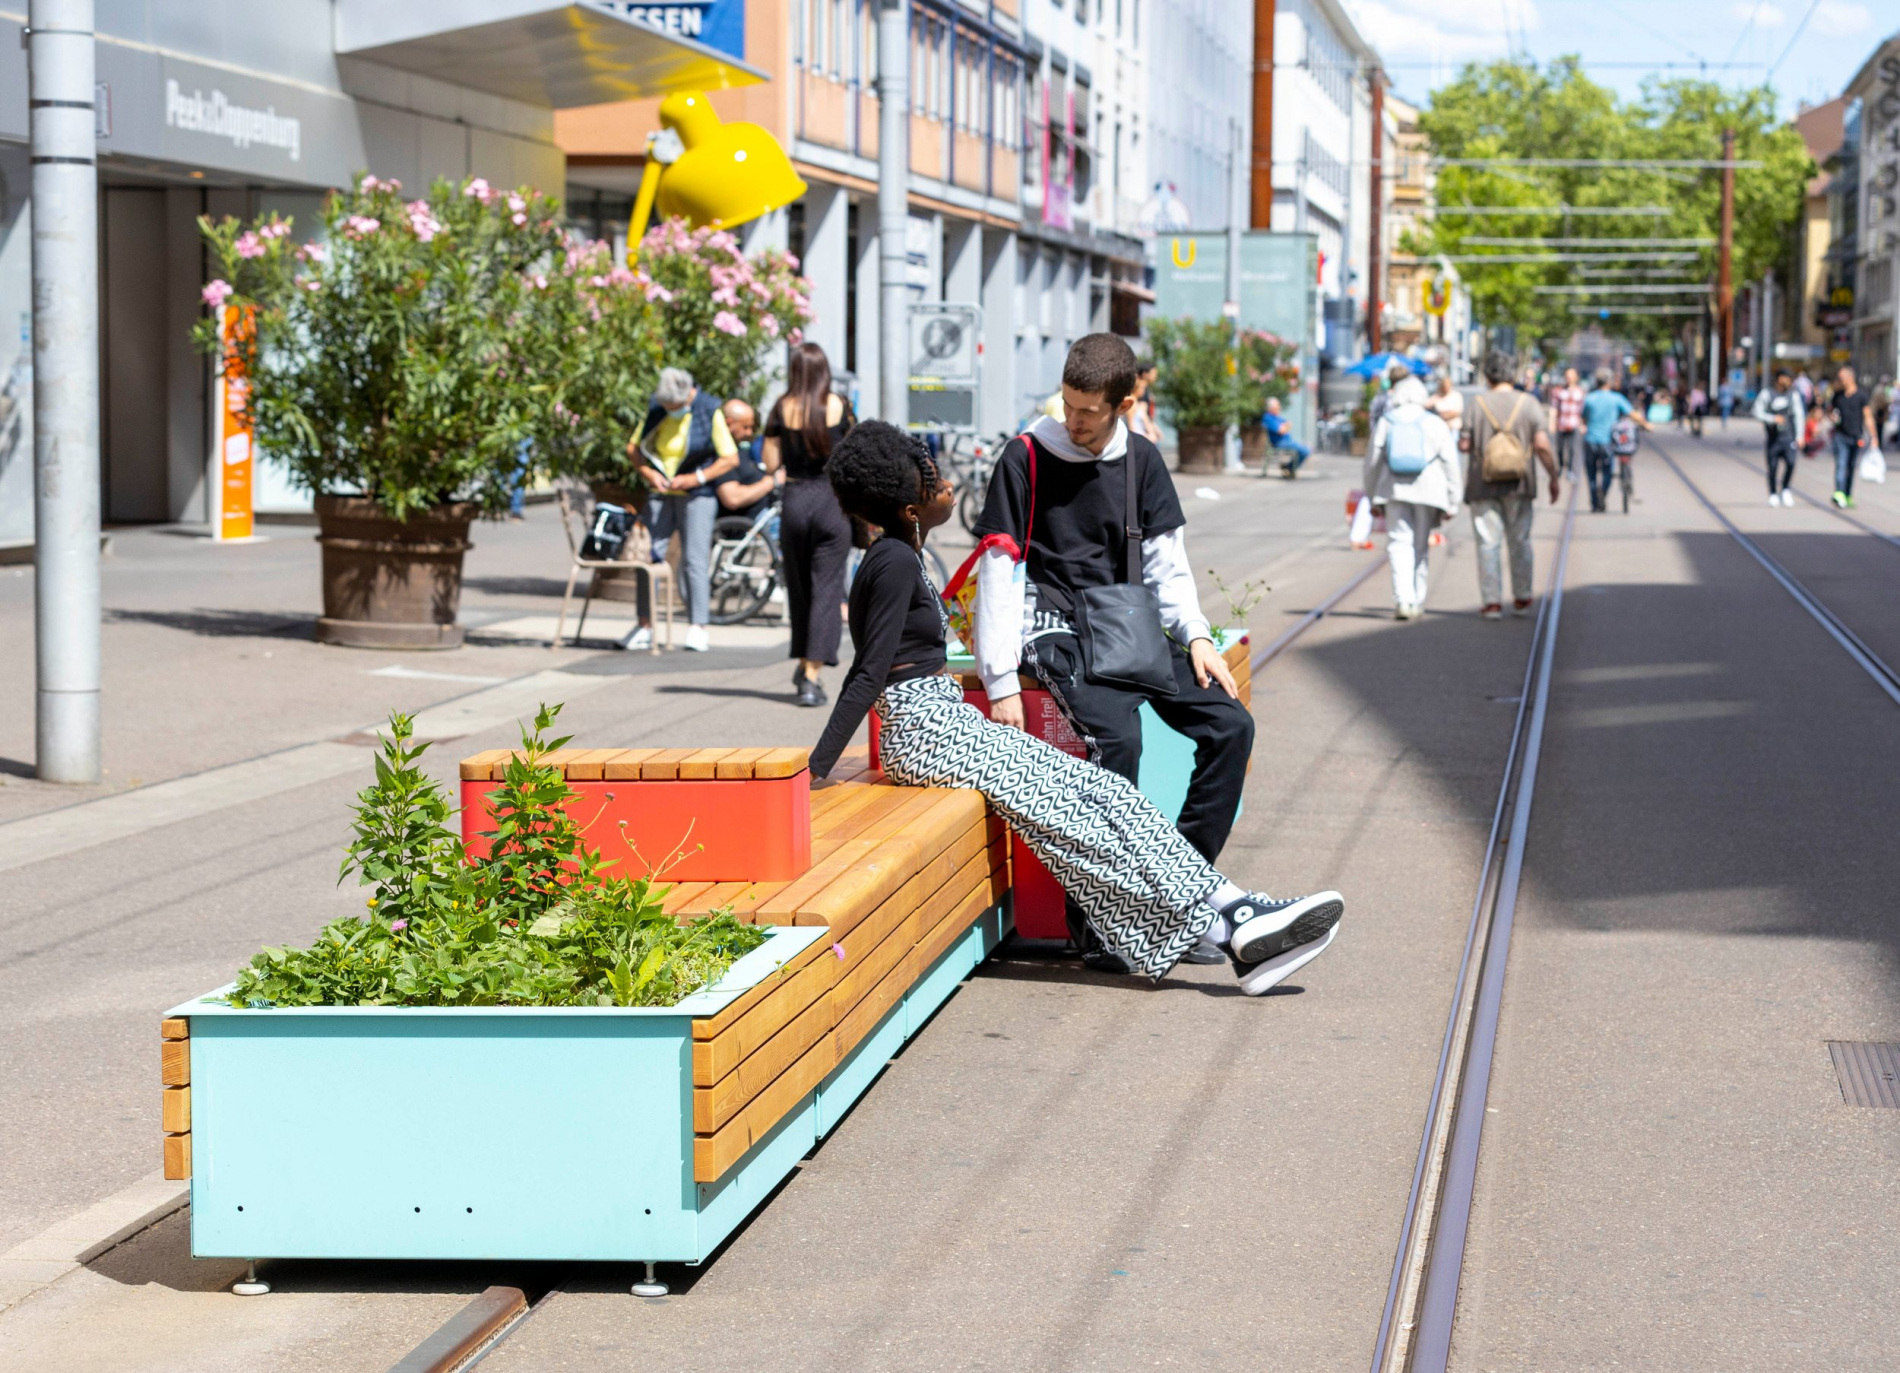 Kaiserstraße wird im Rahmen von "Bahn frei!" zur Sommerbühne